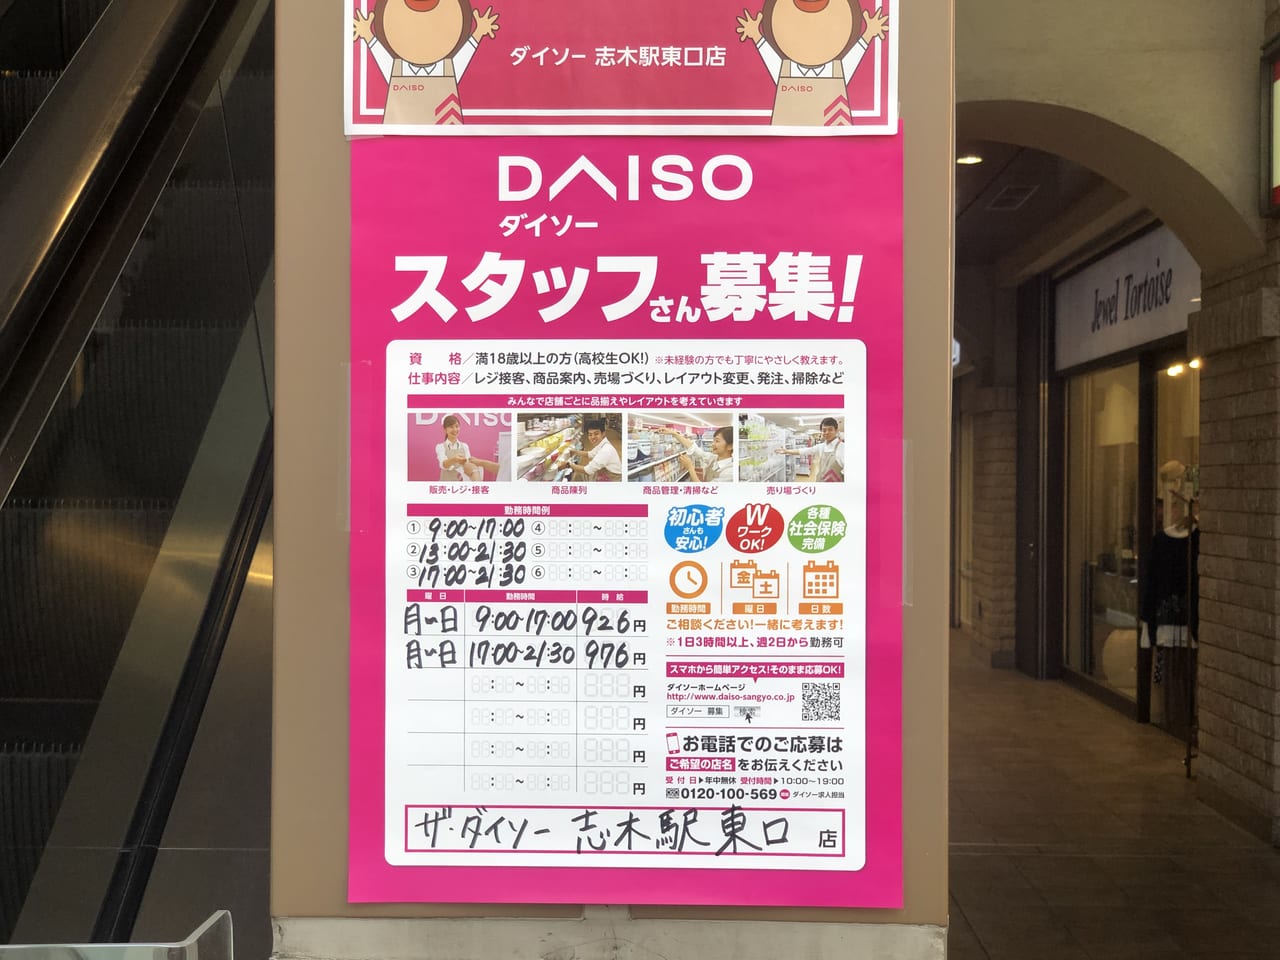 志木駅 東口でてすぐに ダイソー が6月4日に開店 マルイのセリアと合わせて百均の使い分けができるー 号外net 新座市 志木市